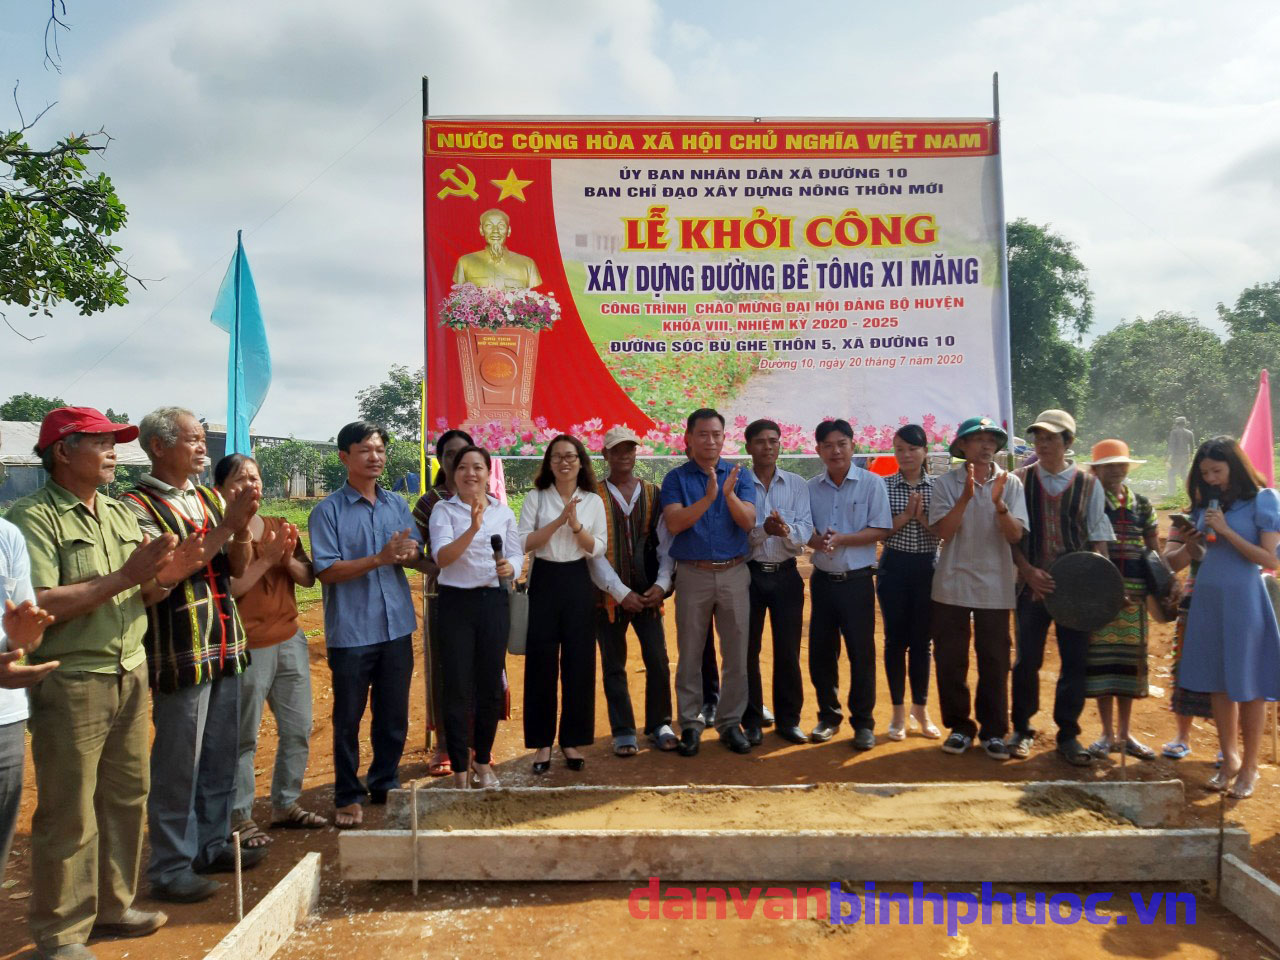 Lãnh đạo và Nhân dân thôn Bù Ghe xã Đường 10  dự lễ khởi công xây dựng đường bê tông xi măng.